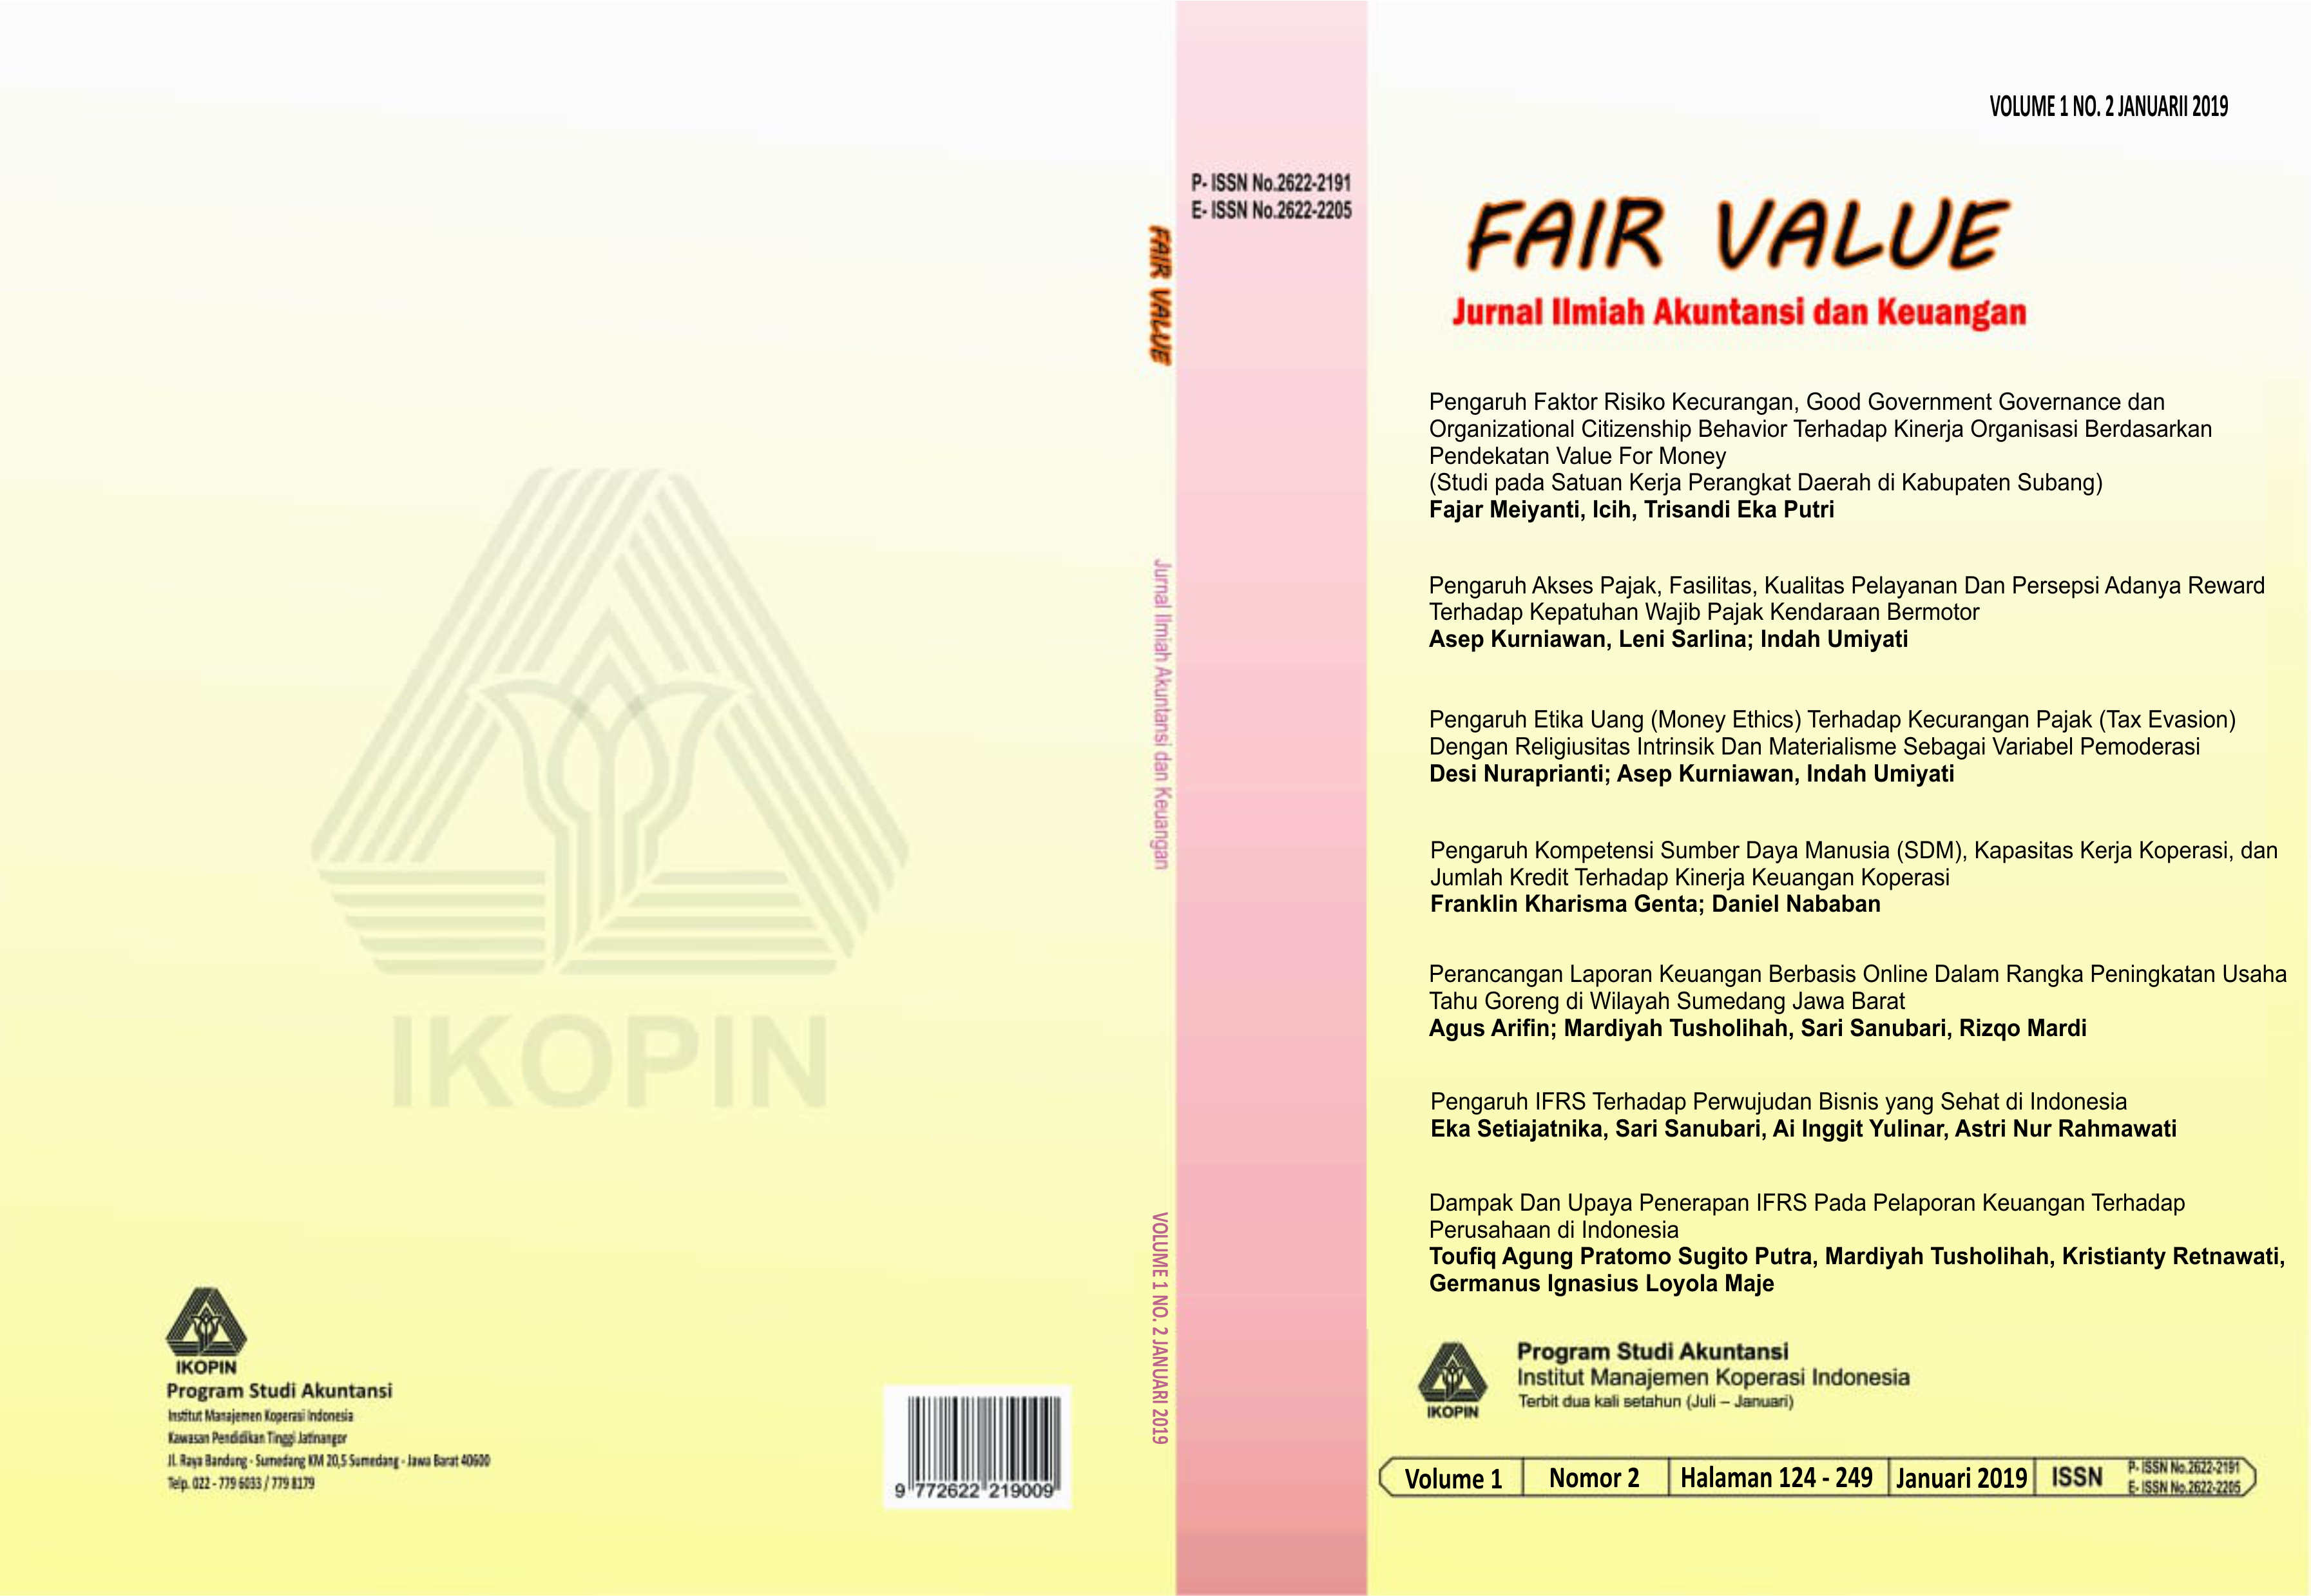 Cover Vol 2 Jurnal Ilmiah Akuntansi dan Keuangan